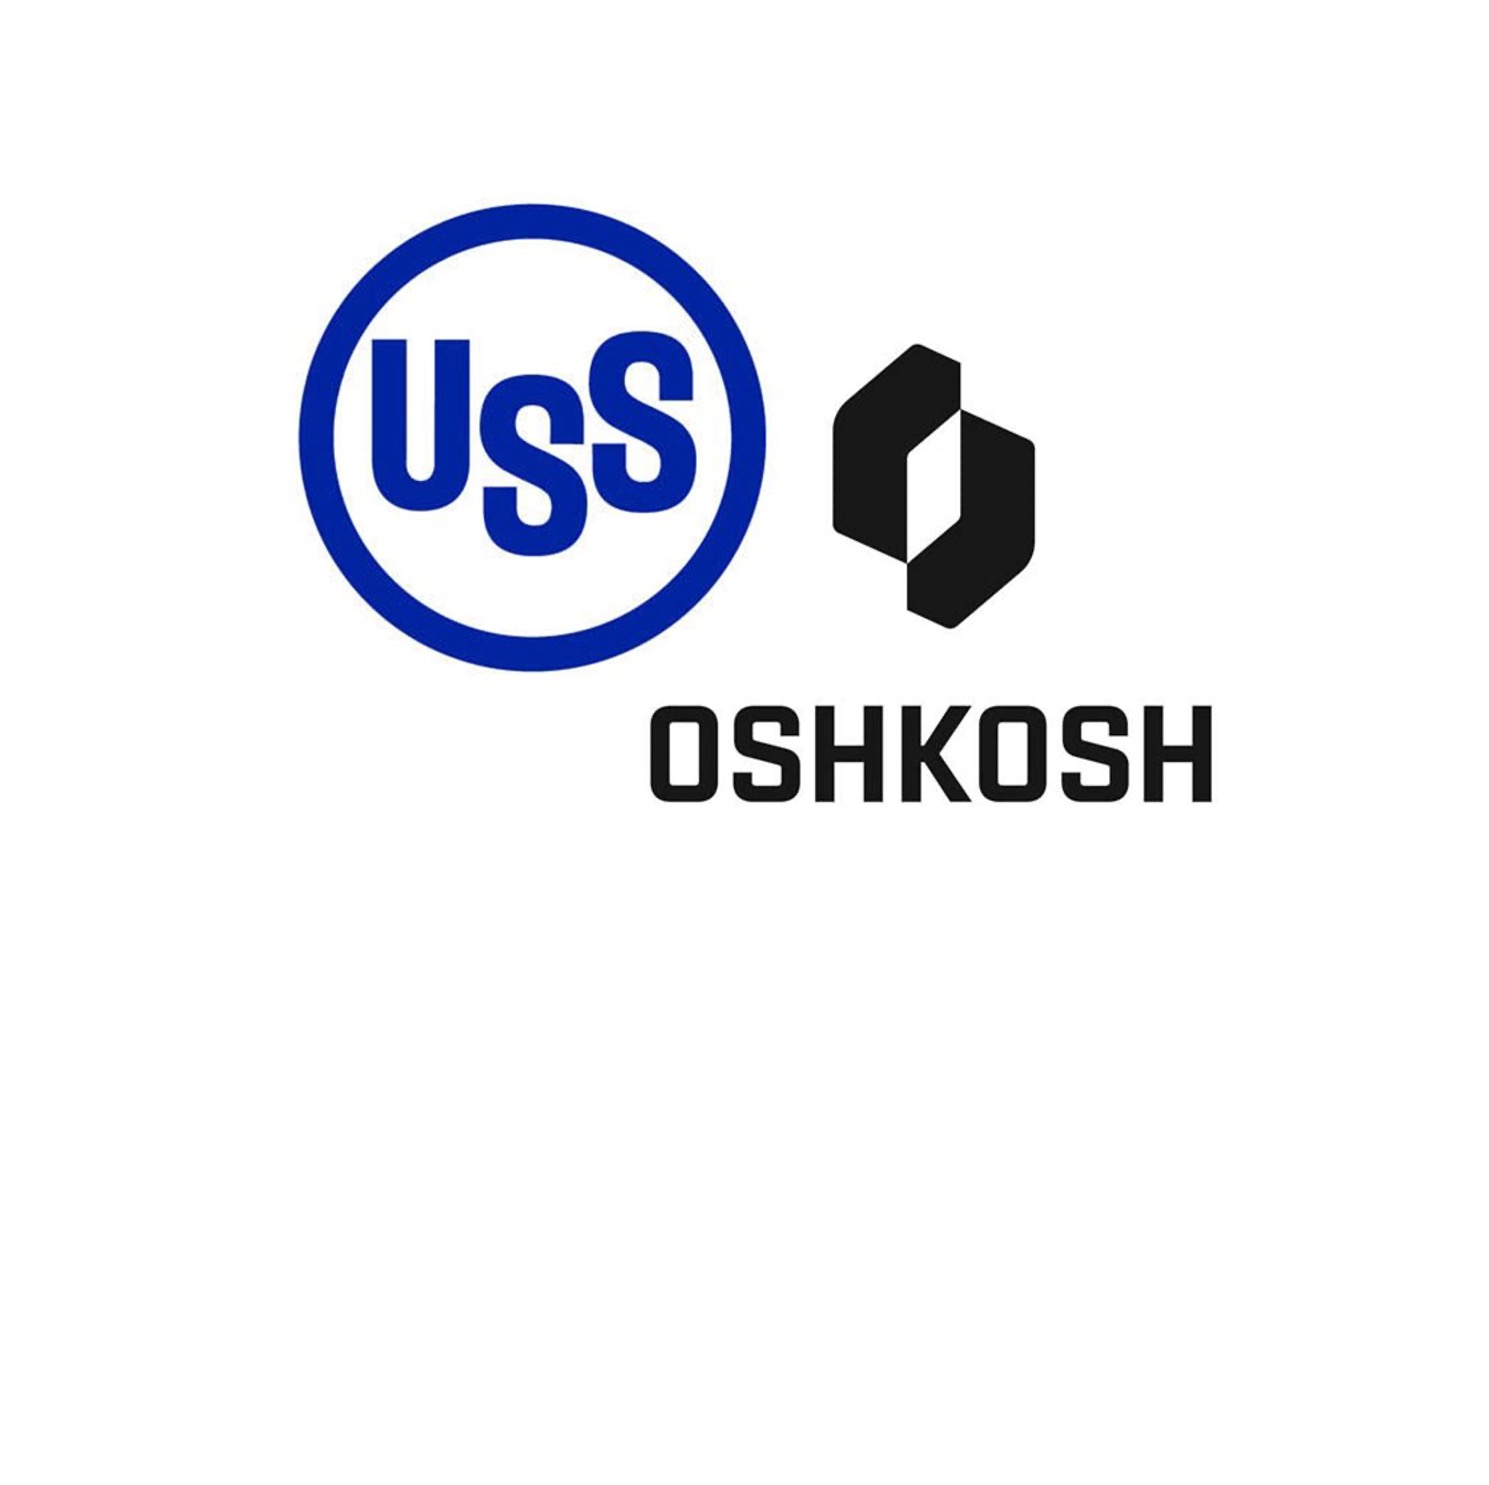 USS OSK logos v4